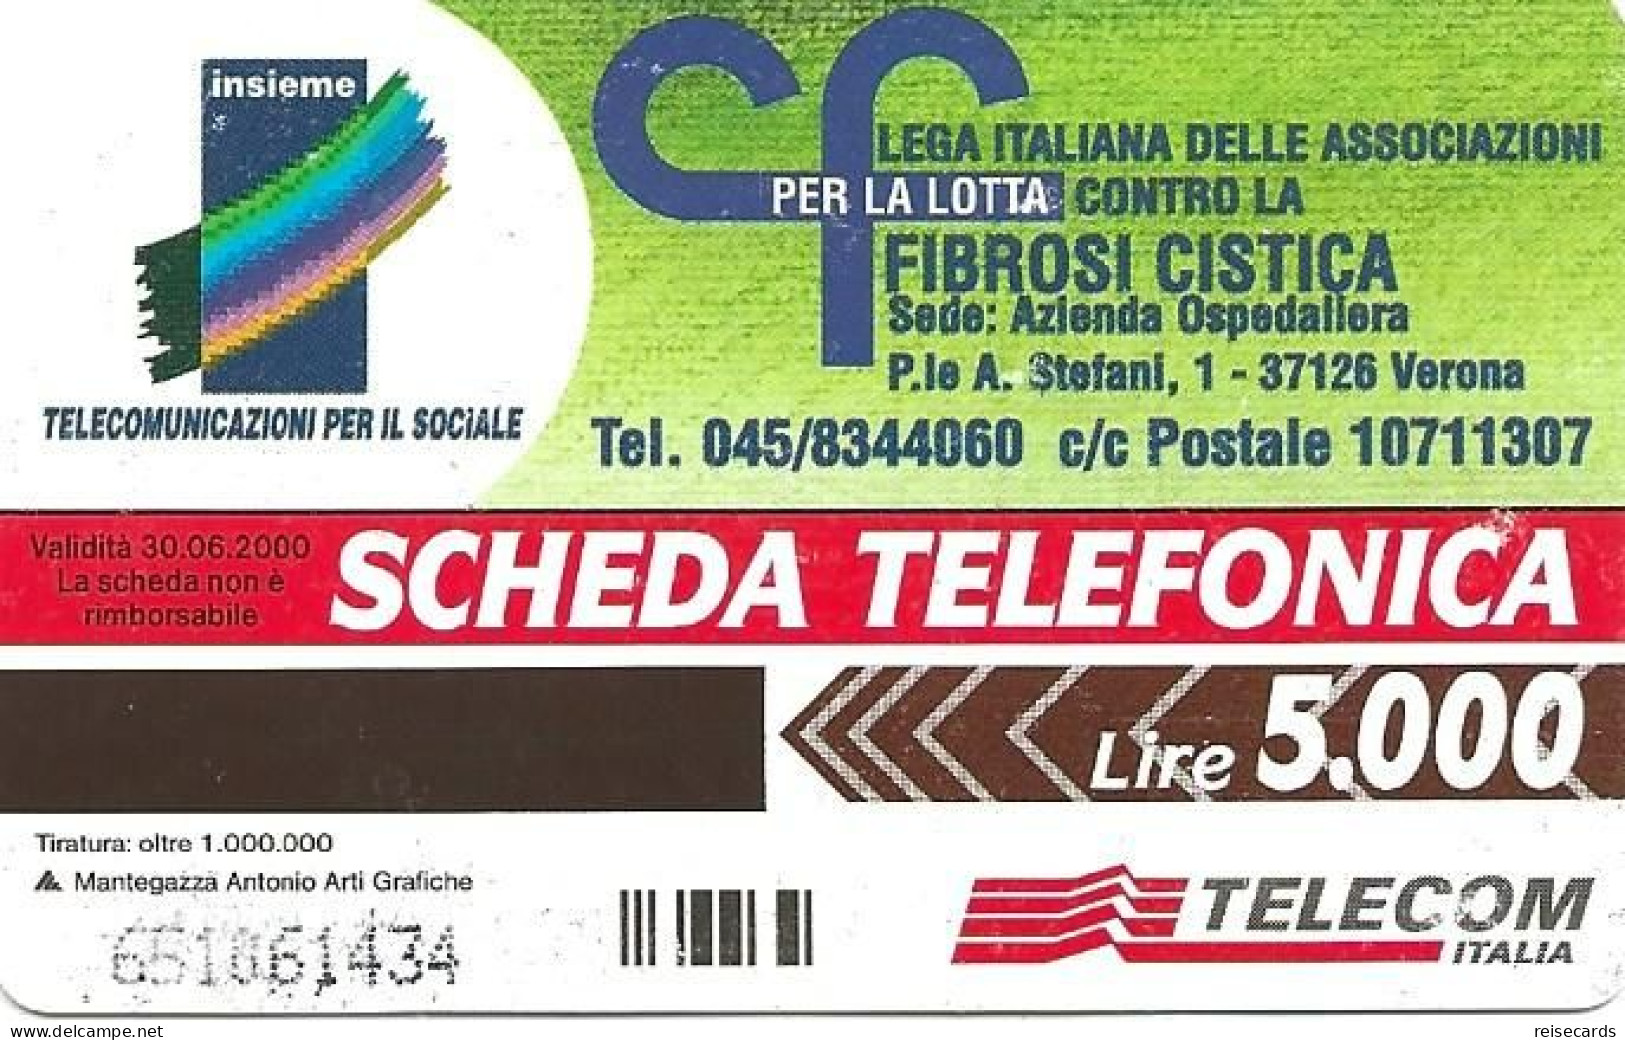 Italy: Telecom Italia - Fibrosi Cistica - Públicas  Publicitarias